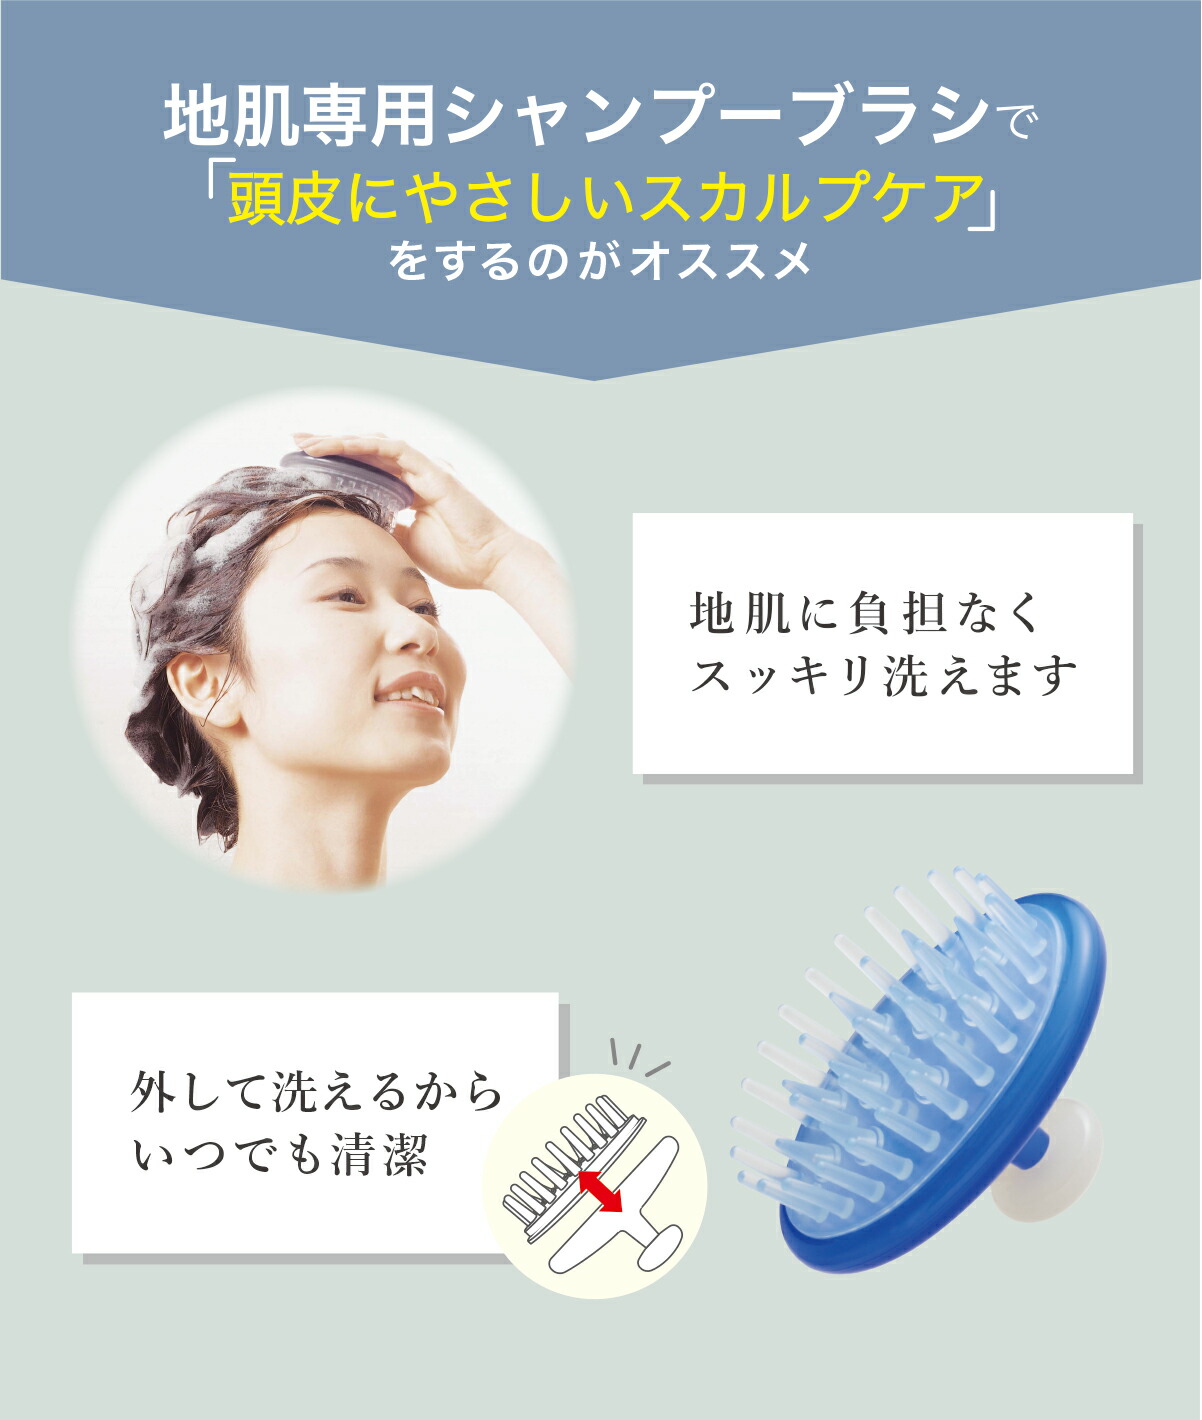 シャンプーブラシ 地肌の痛くない シャンプーブラシ ブルー 包装アウトレット 頭皮マッサージ スカルプケア ヘッドスパ VeSS ベス工業  JS-500 :o-js-500a:VeSSオフィシャルストア 通販 